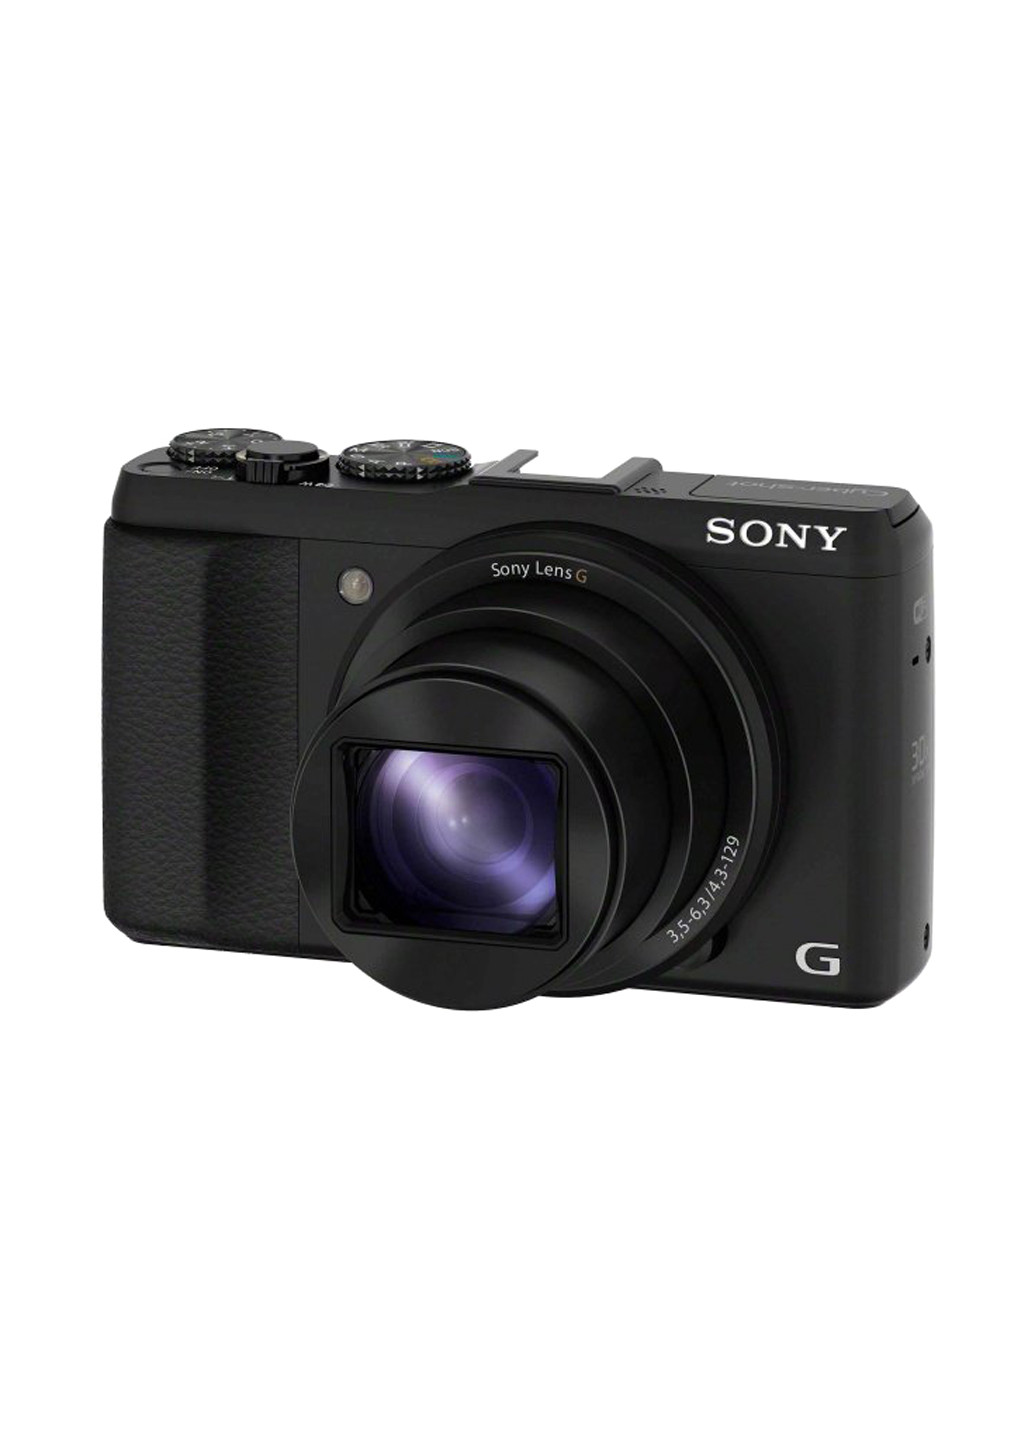 Компактная фотокамера Sony cyber-shot hx60 black (132999706)